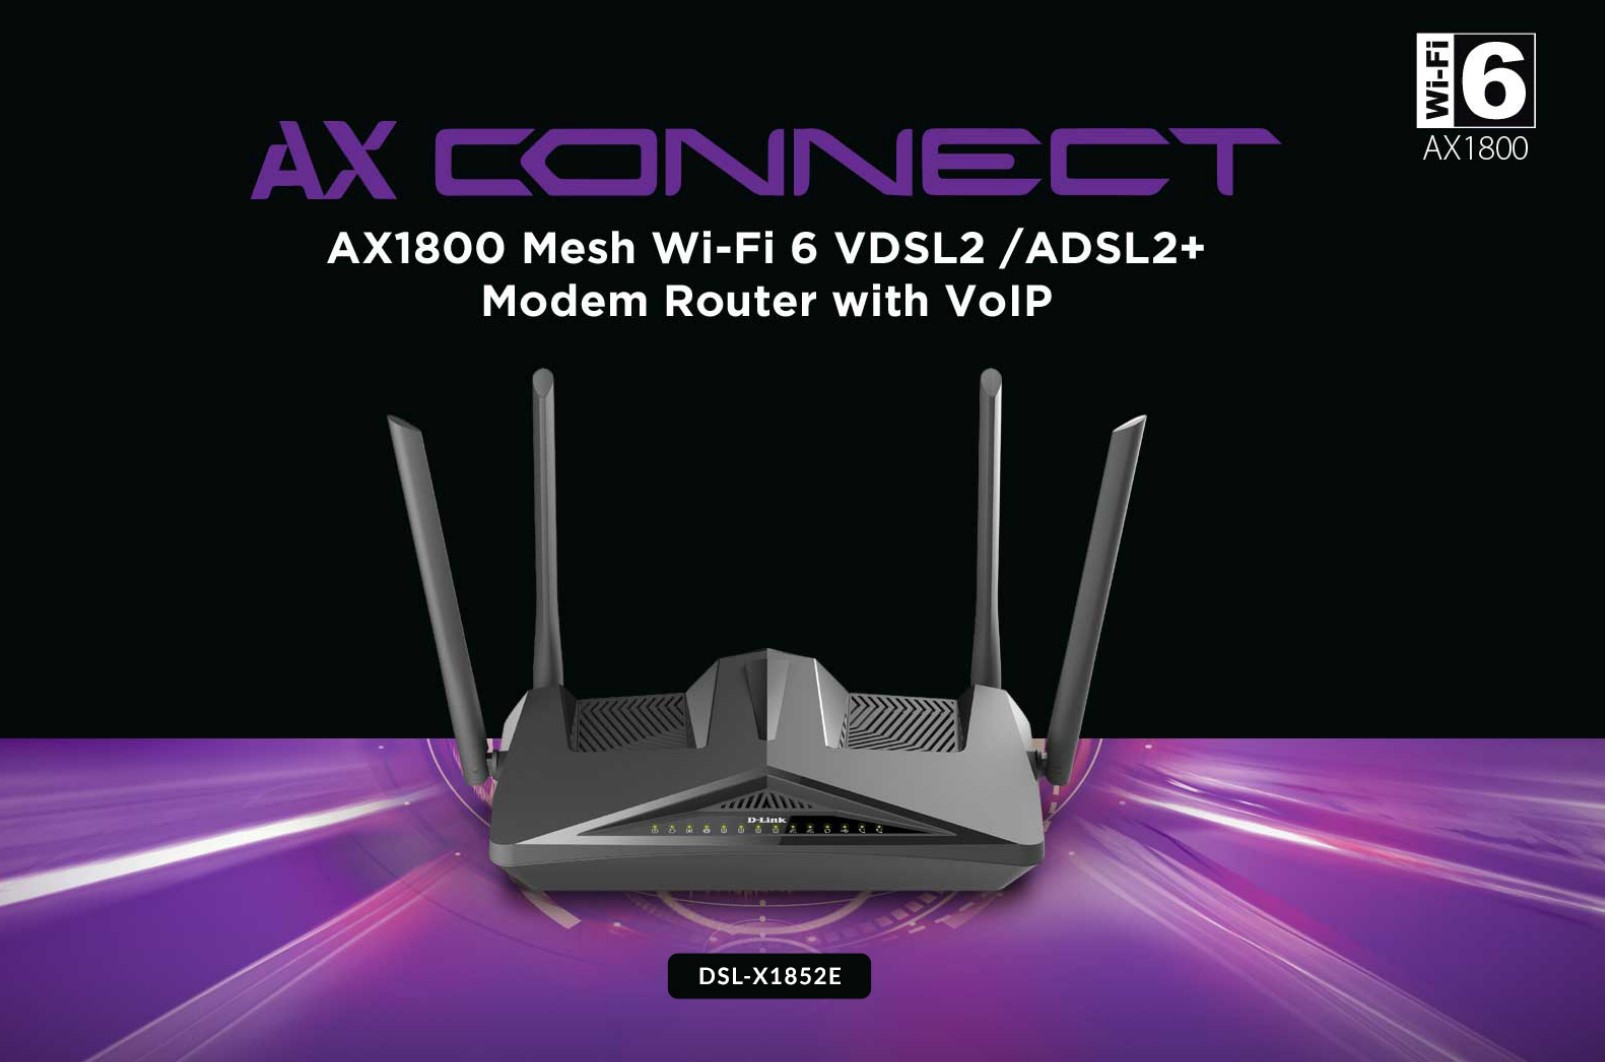 D-Link DSL-X1852E AX1800 DSL router (DLink network review)